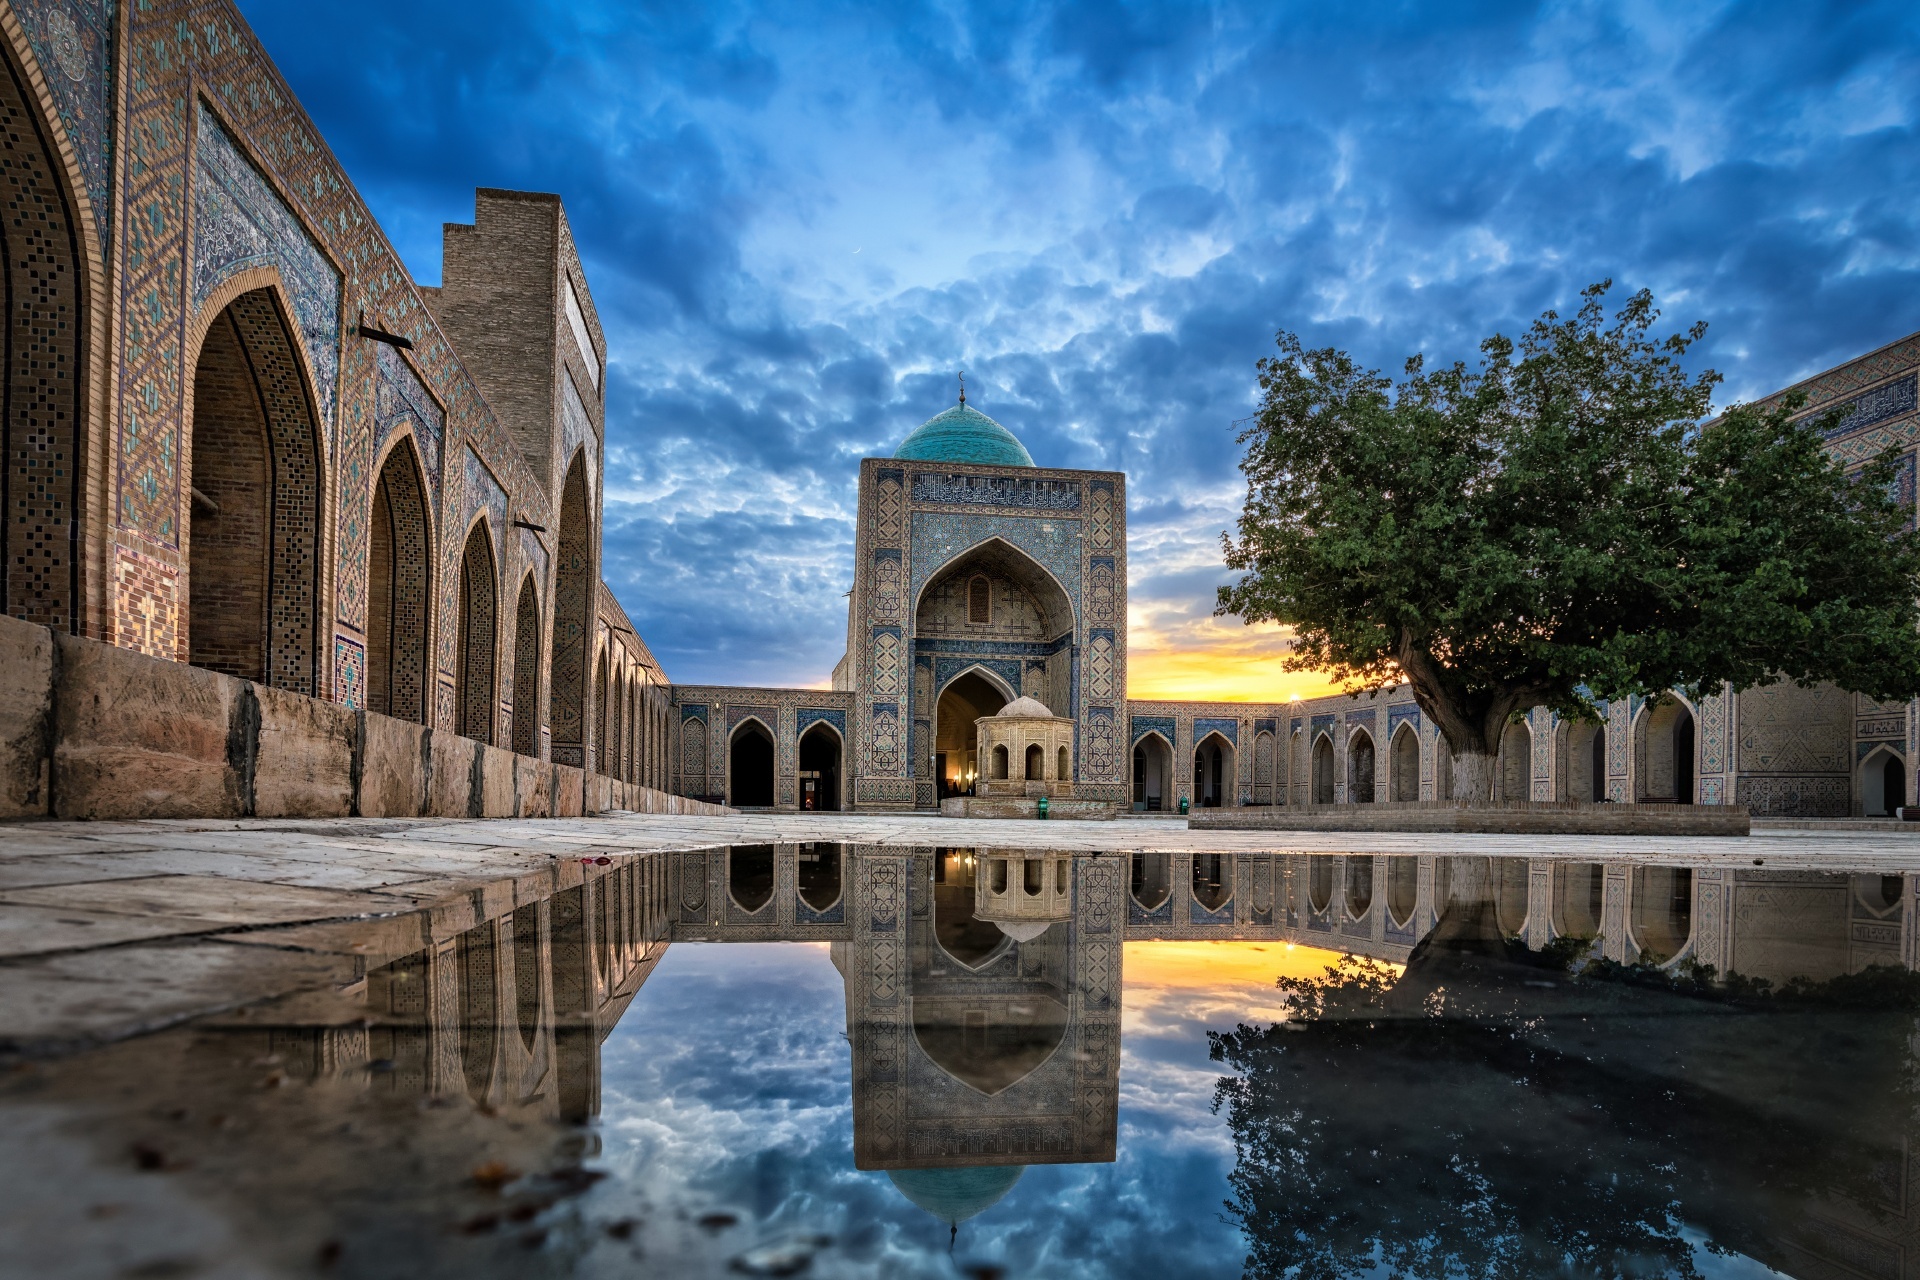 カラーン・モスクと中庭の風景　ウズベキスタンの風景